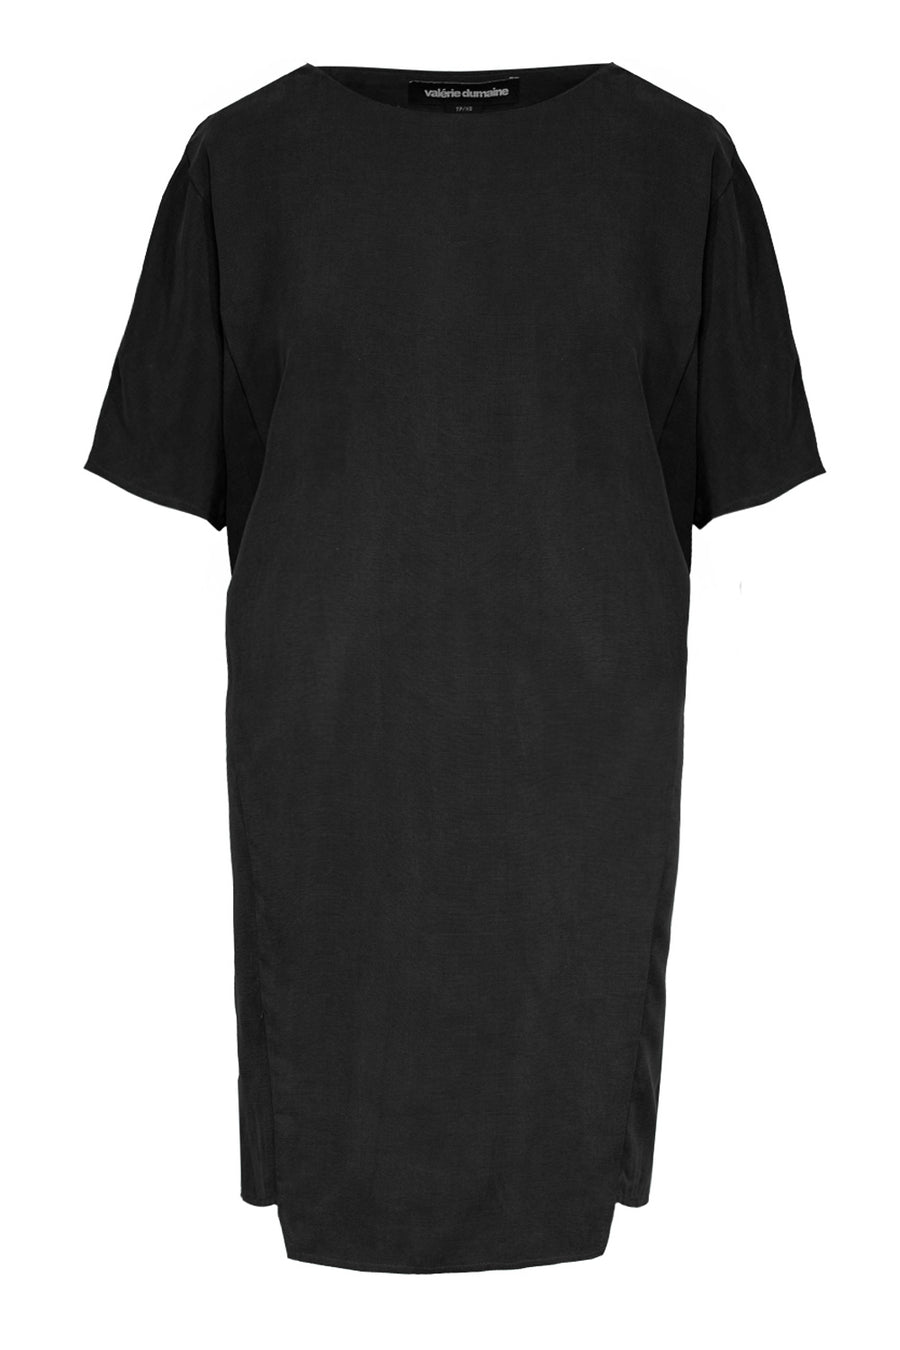 Defect | Lavan Dress Black | M